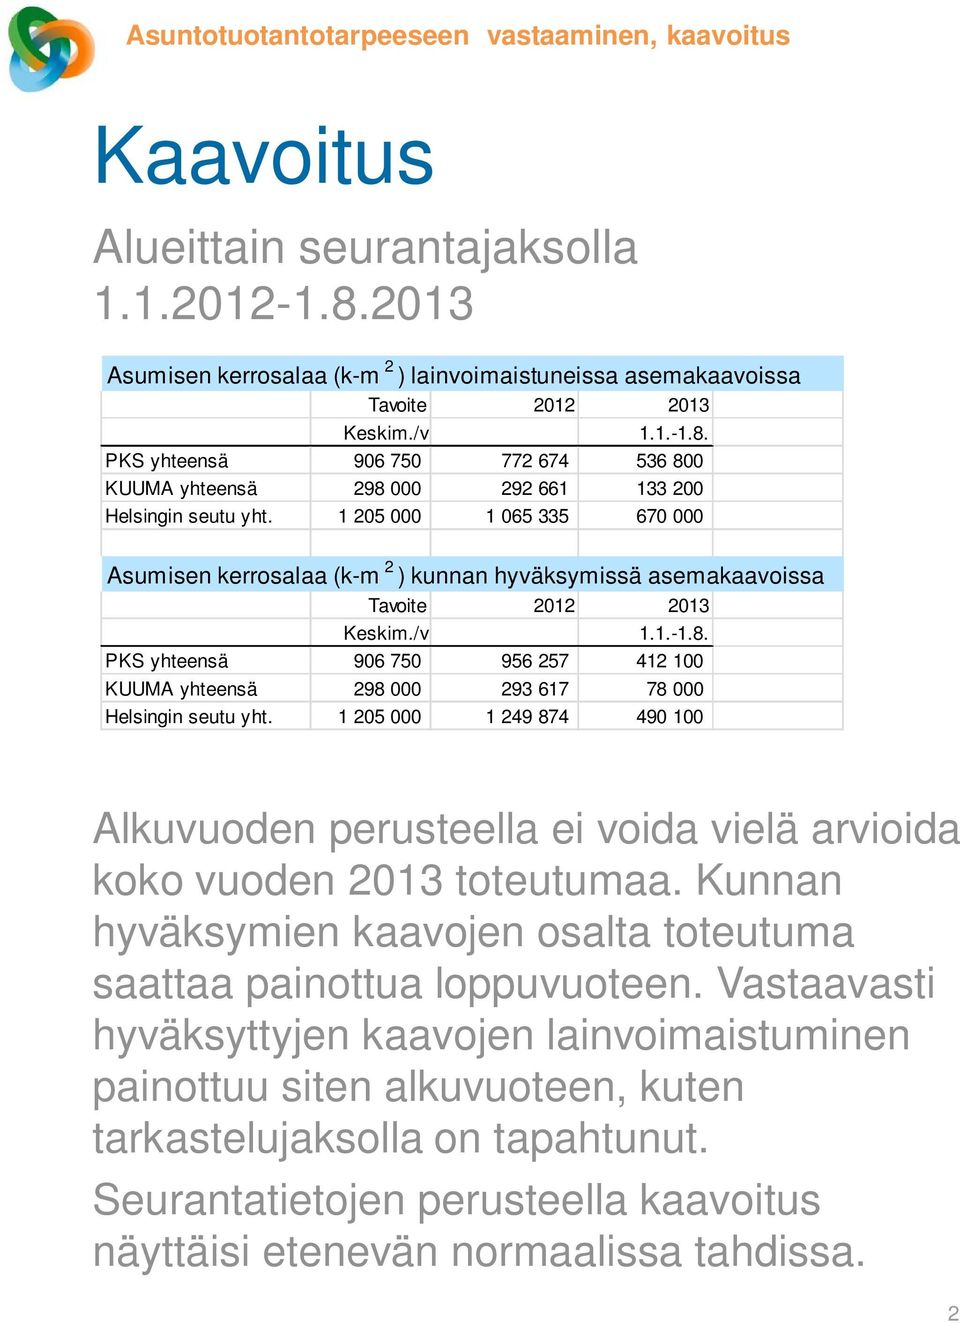 PKS yhteensä 906 750 956 257 412 100 KUUMA yhteensä 298 000 293 617 78 000 Helsingin seutu yht. 1 205 000 1 249 874 490 100 Alkuvuoden perusteella ei voida vielä arvioida koko vuoden 2013 toteutumaa.